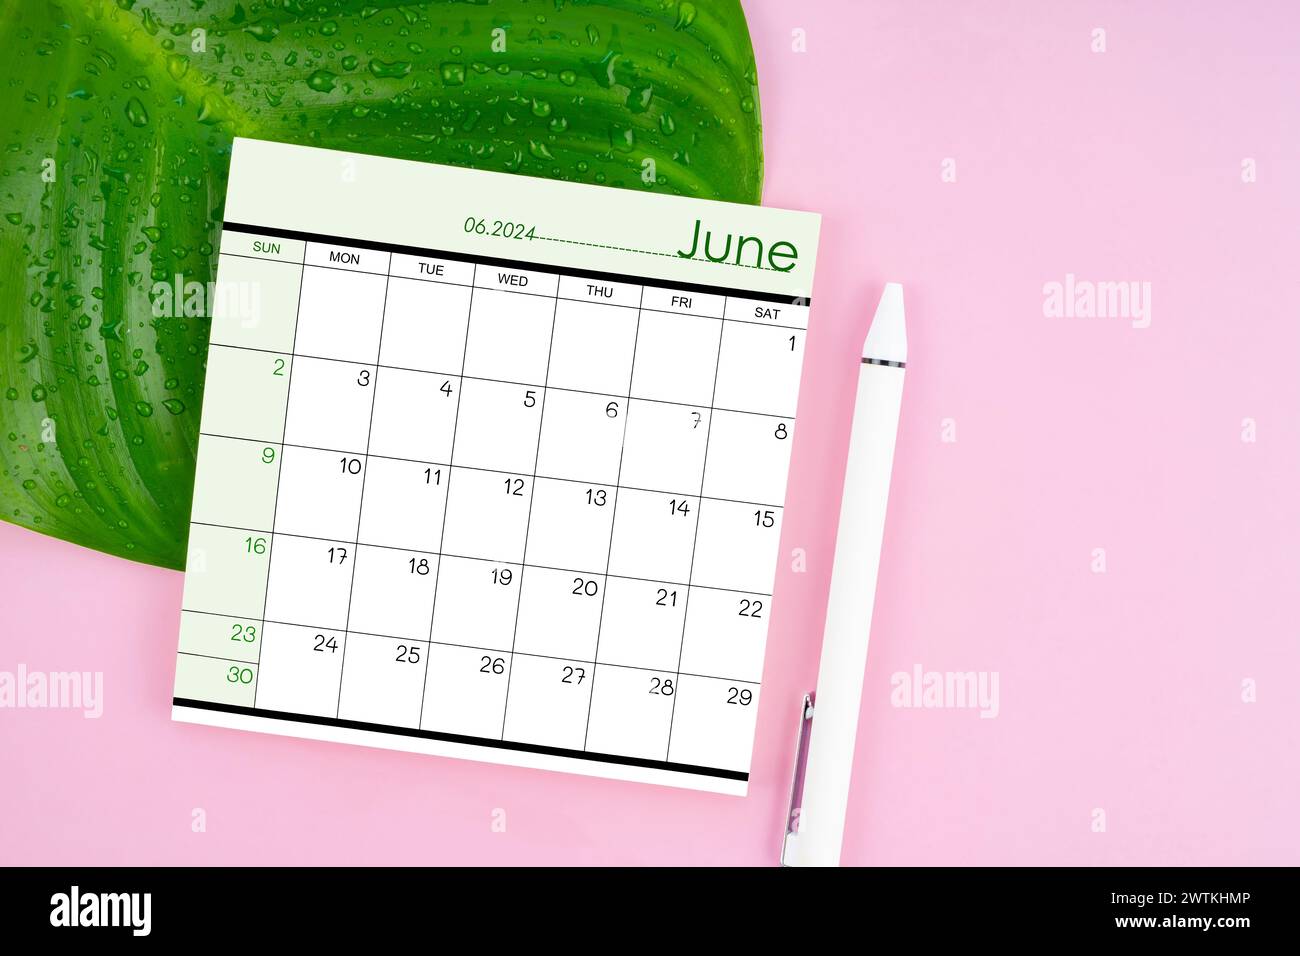 Juin 2024 page de calendrier et feuille verte fraîche avec des gouttes d'eau sur fond de couleur rose. Banque D'Images